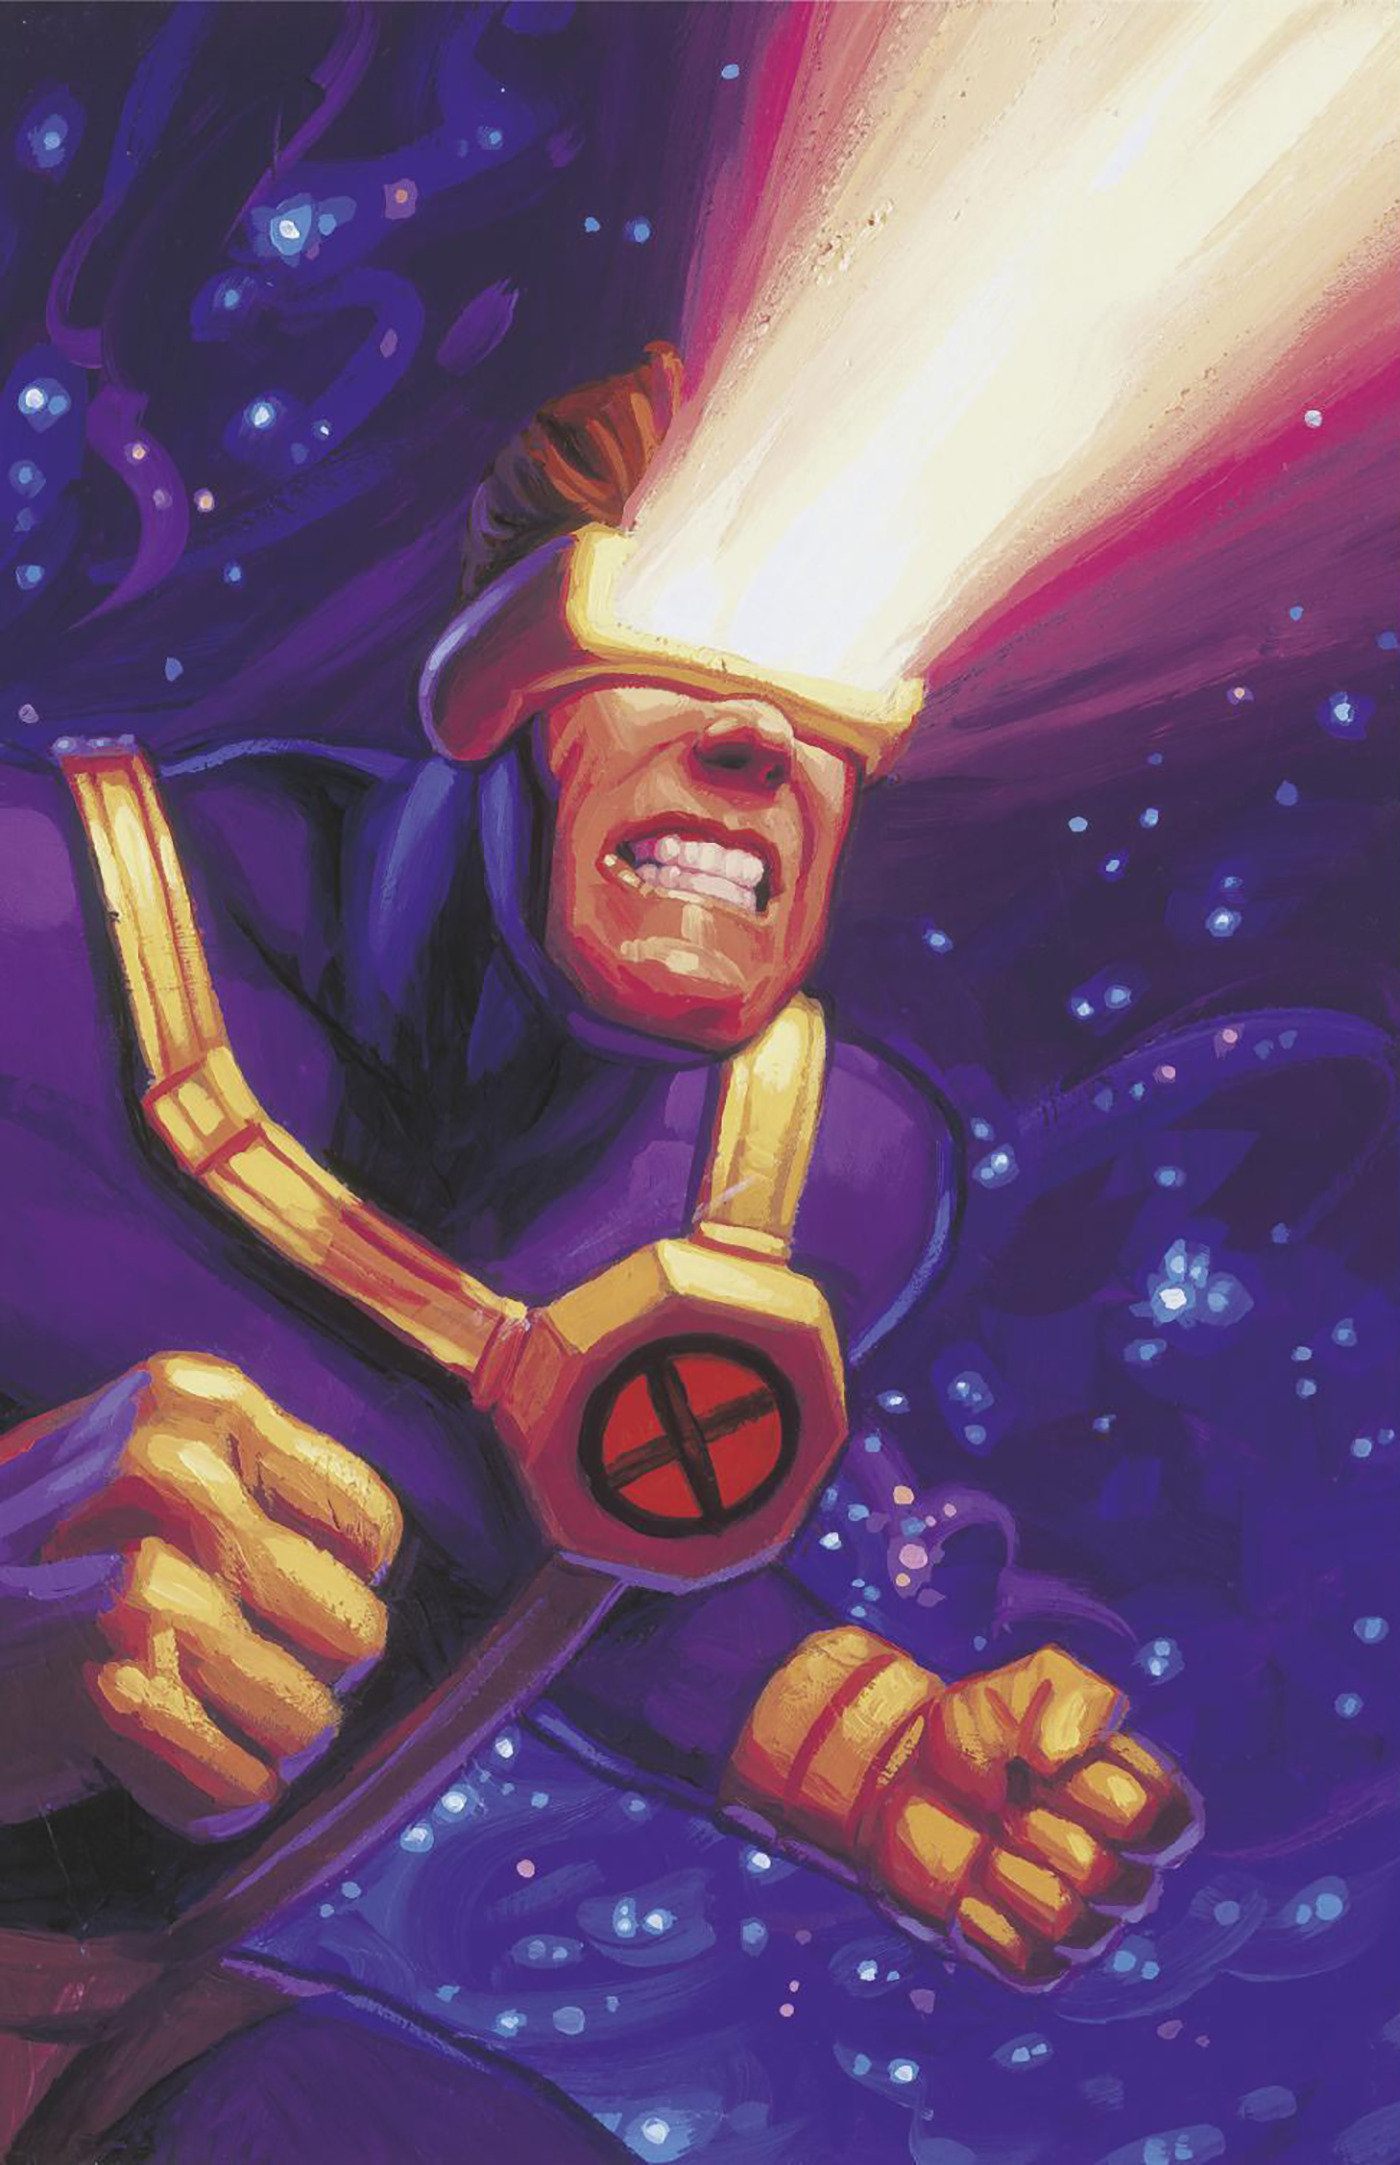 Marvel Super Heroes Secret Wars Battleworld #3 Greg and Tim Hildebrandt Cyclops Marvel Masterpieces III Virgin Variant 1 for 50 Incentive